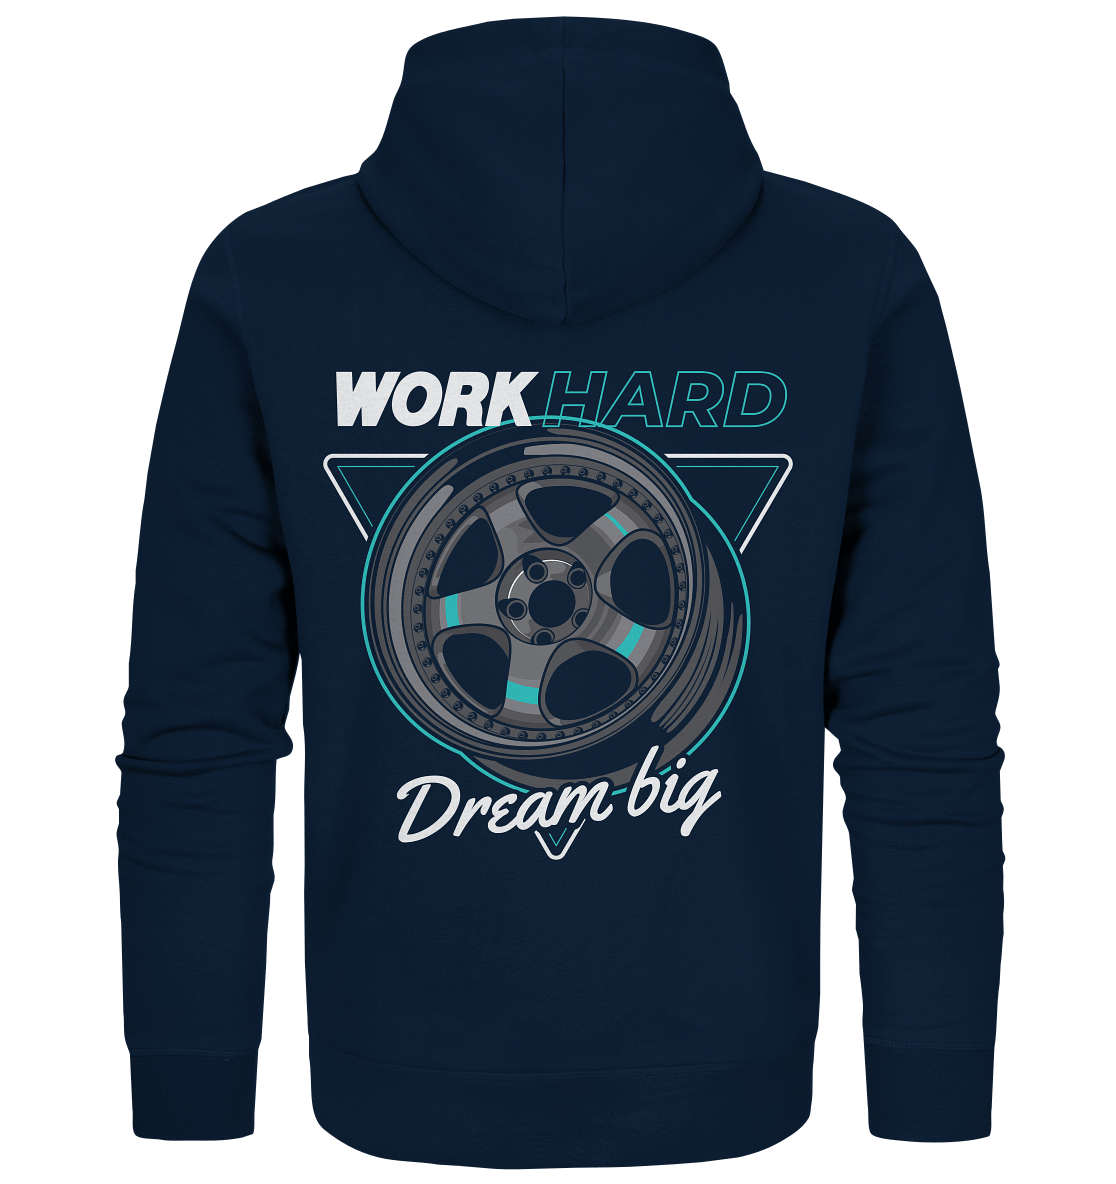 WORK hard - Organic Zipper - MotoMerch.de